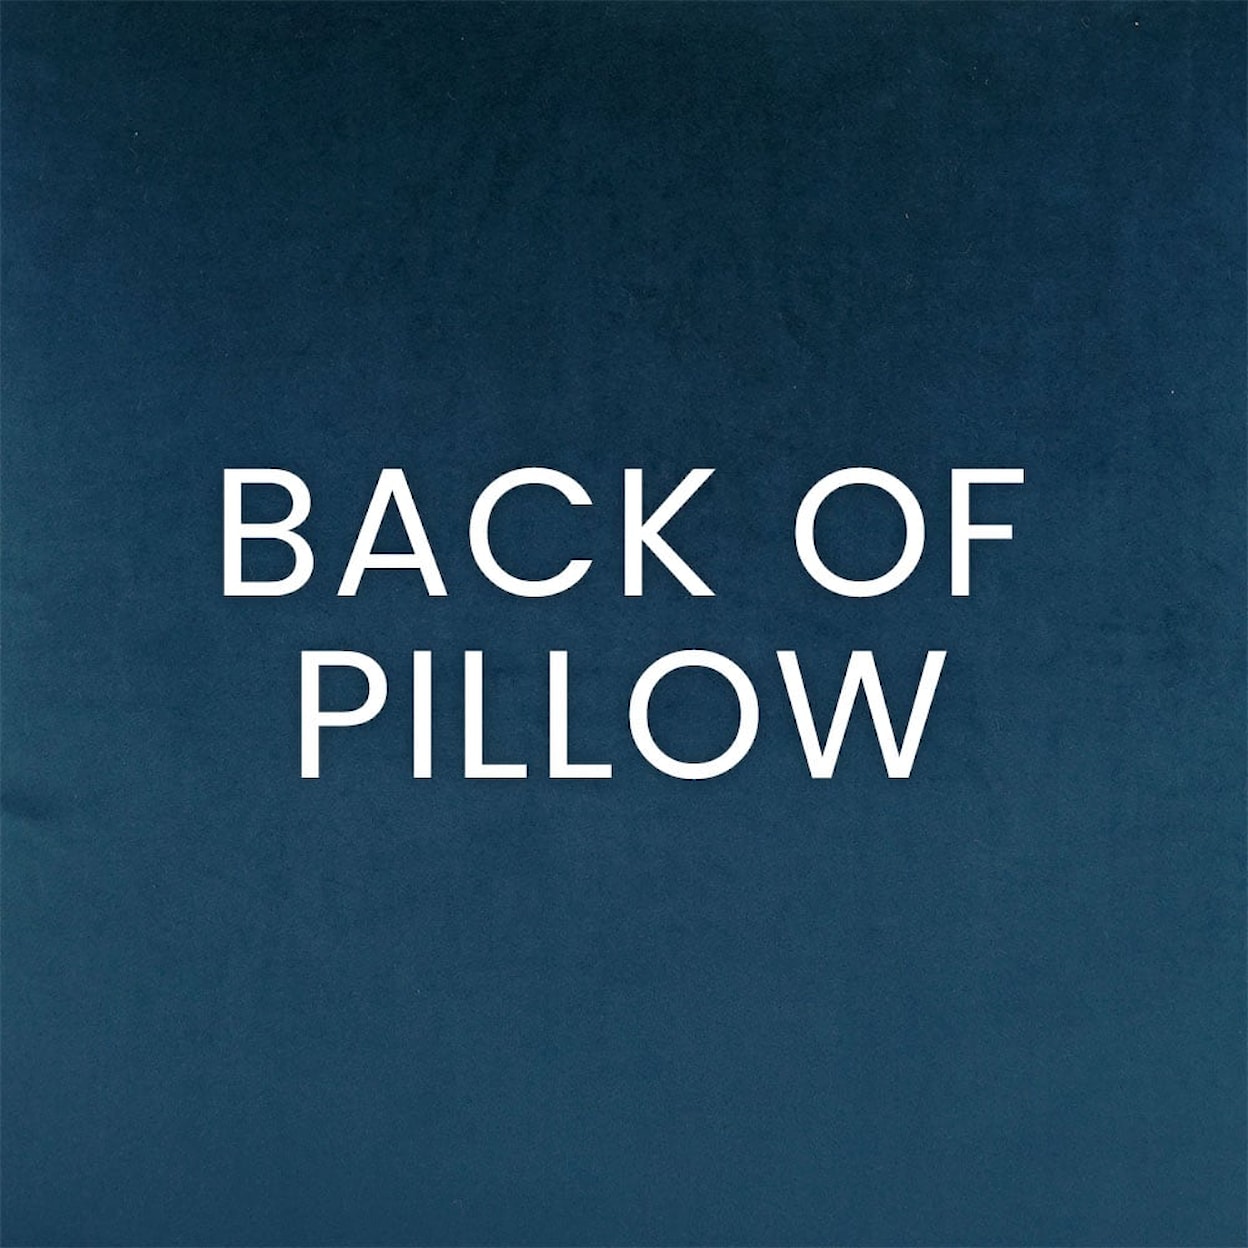 D.V. KAP Home Indoor Pillows AKBAR-BLUE 24" THROW PILLOW